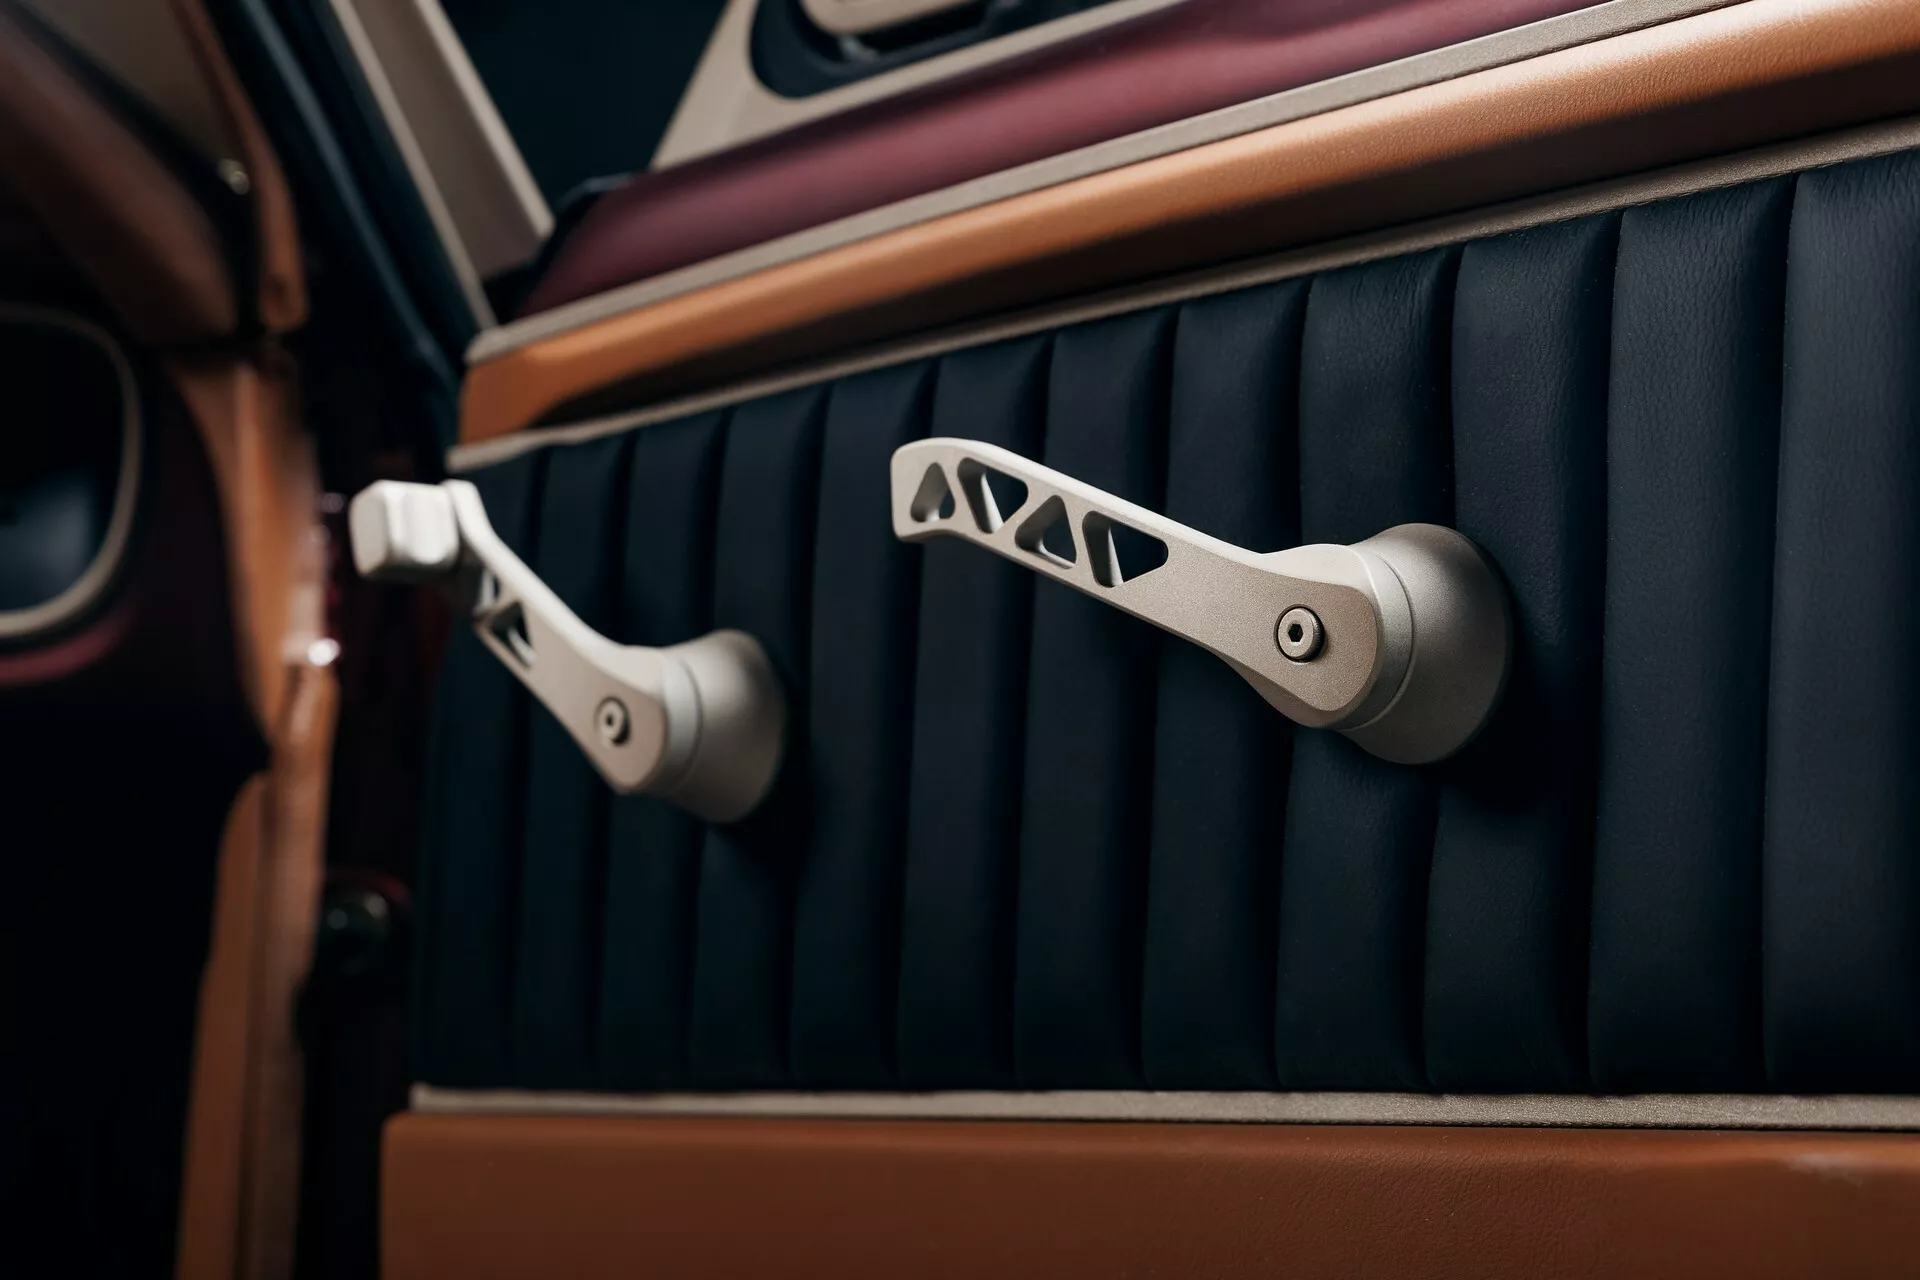 تدشين واحدة من أجمل سيارات فورد موستنج الكلاسيكية في معرض سيما الأمريكي بمحرك 8 سلندر عصري 7